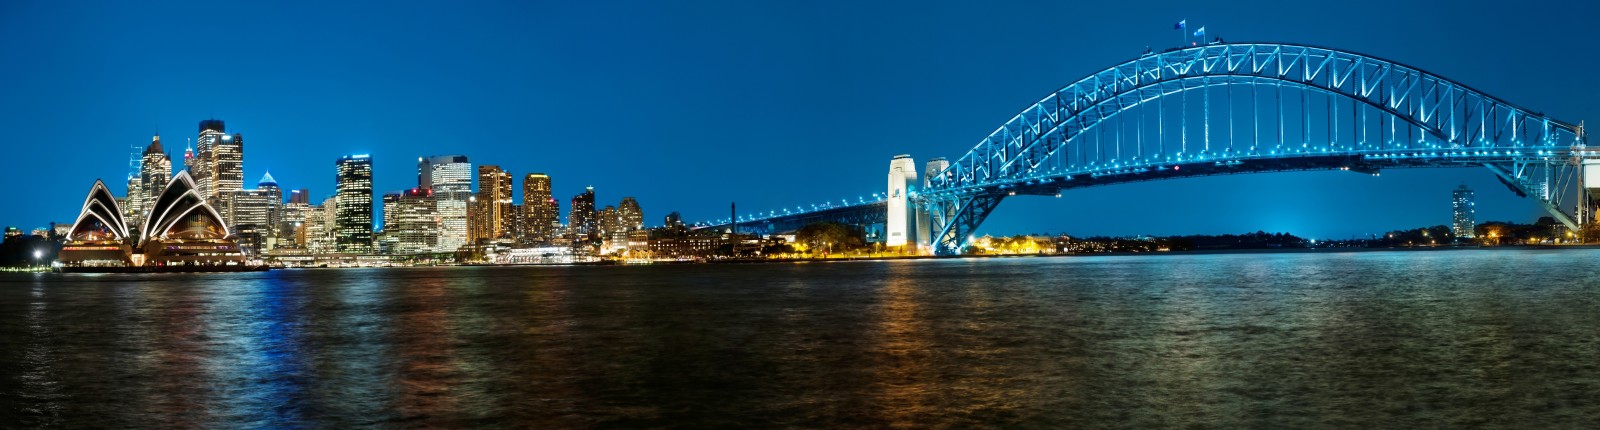 อ่าว, คืนเมือง, สะพาน, ทัศนียภาพ, ออสเตรเลีย, ซิดนีย์, สะพานท่าเรือ, อ่าวซิดนีย์